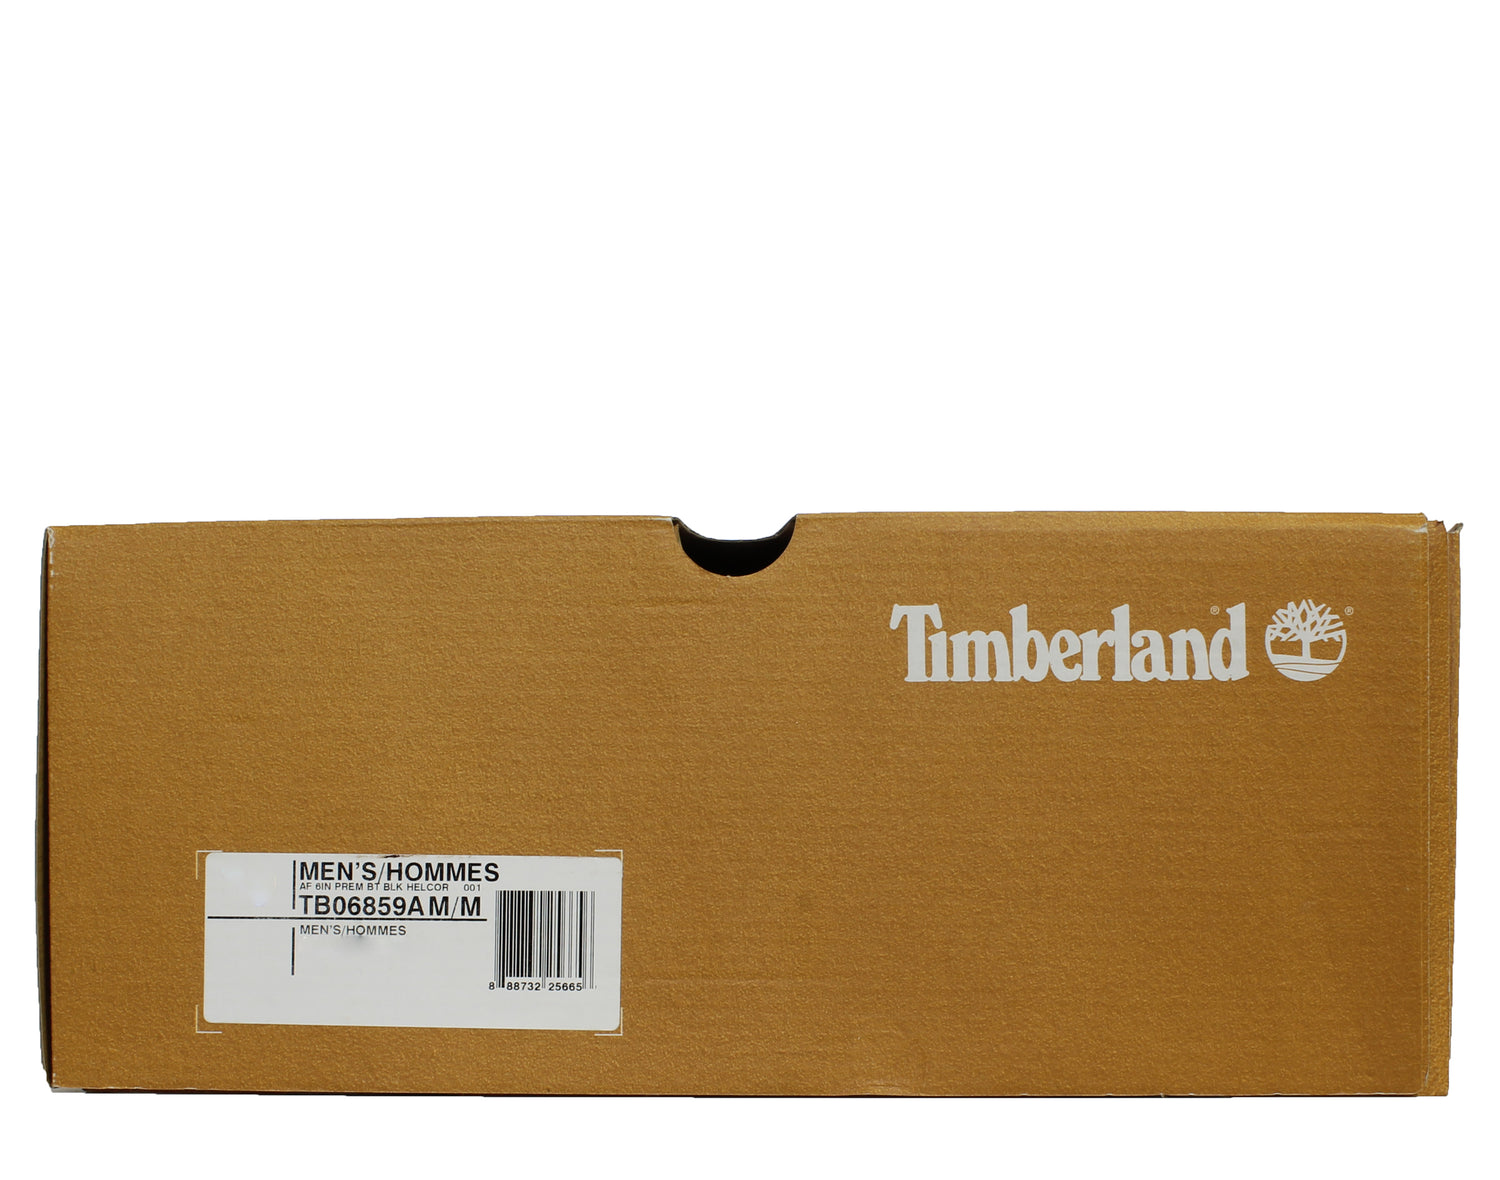 Timberland 6-Inch Premium Helcor Waterproof Men's Boots